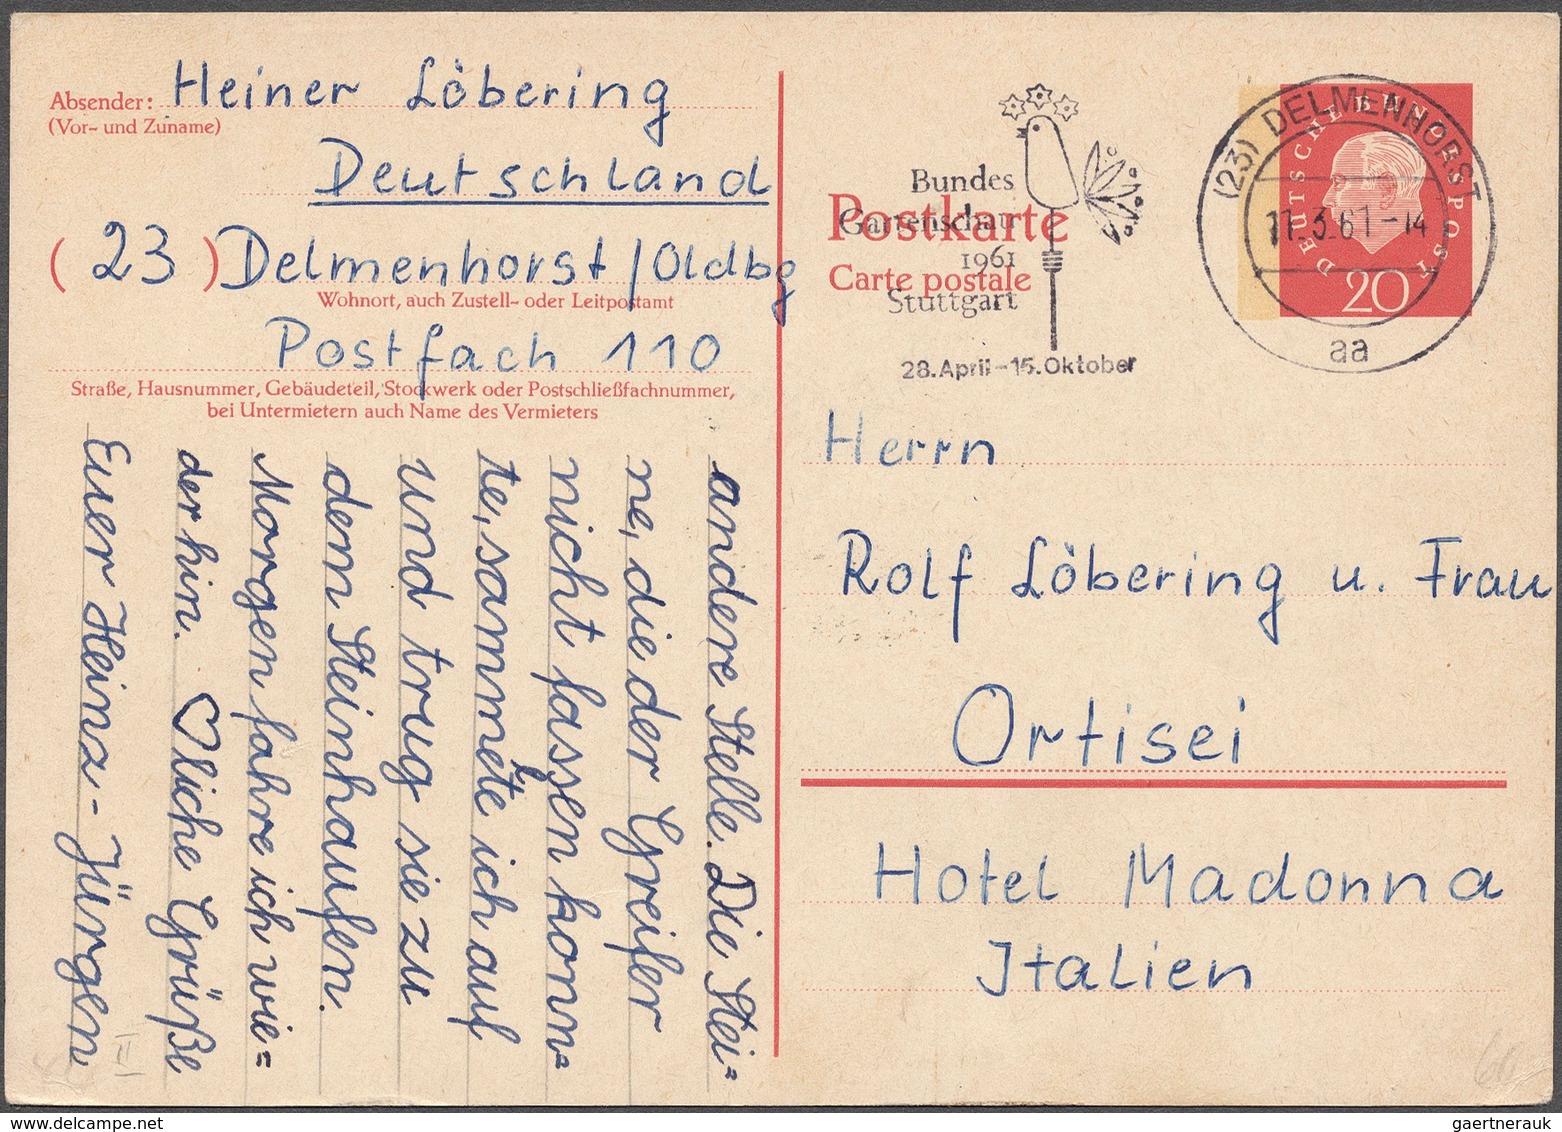 Bundesrepublik Deutschland: 1950/97, interessanter Posten mit 233 Ganzsachen, darunter Spitzenstücke